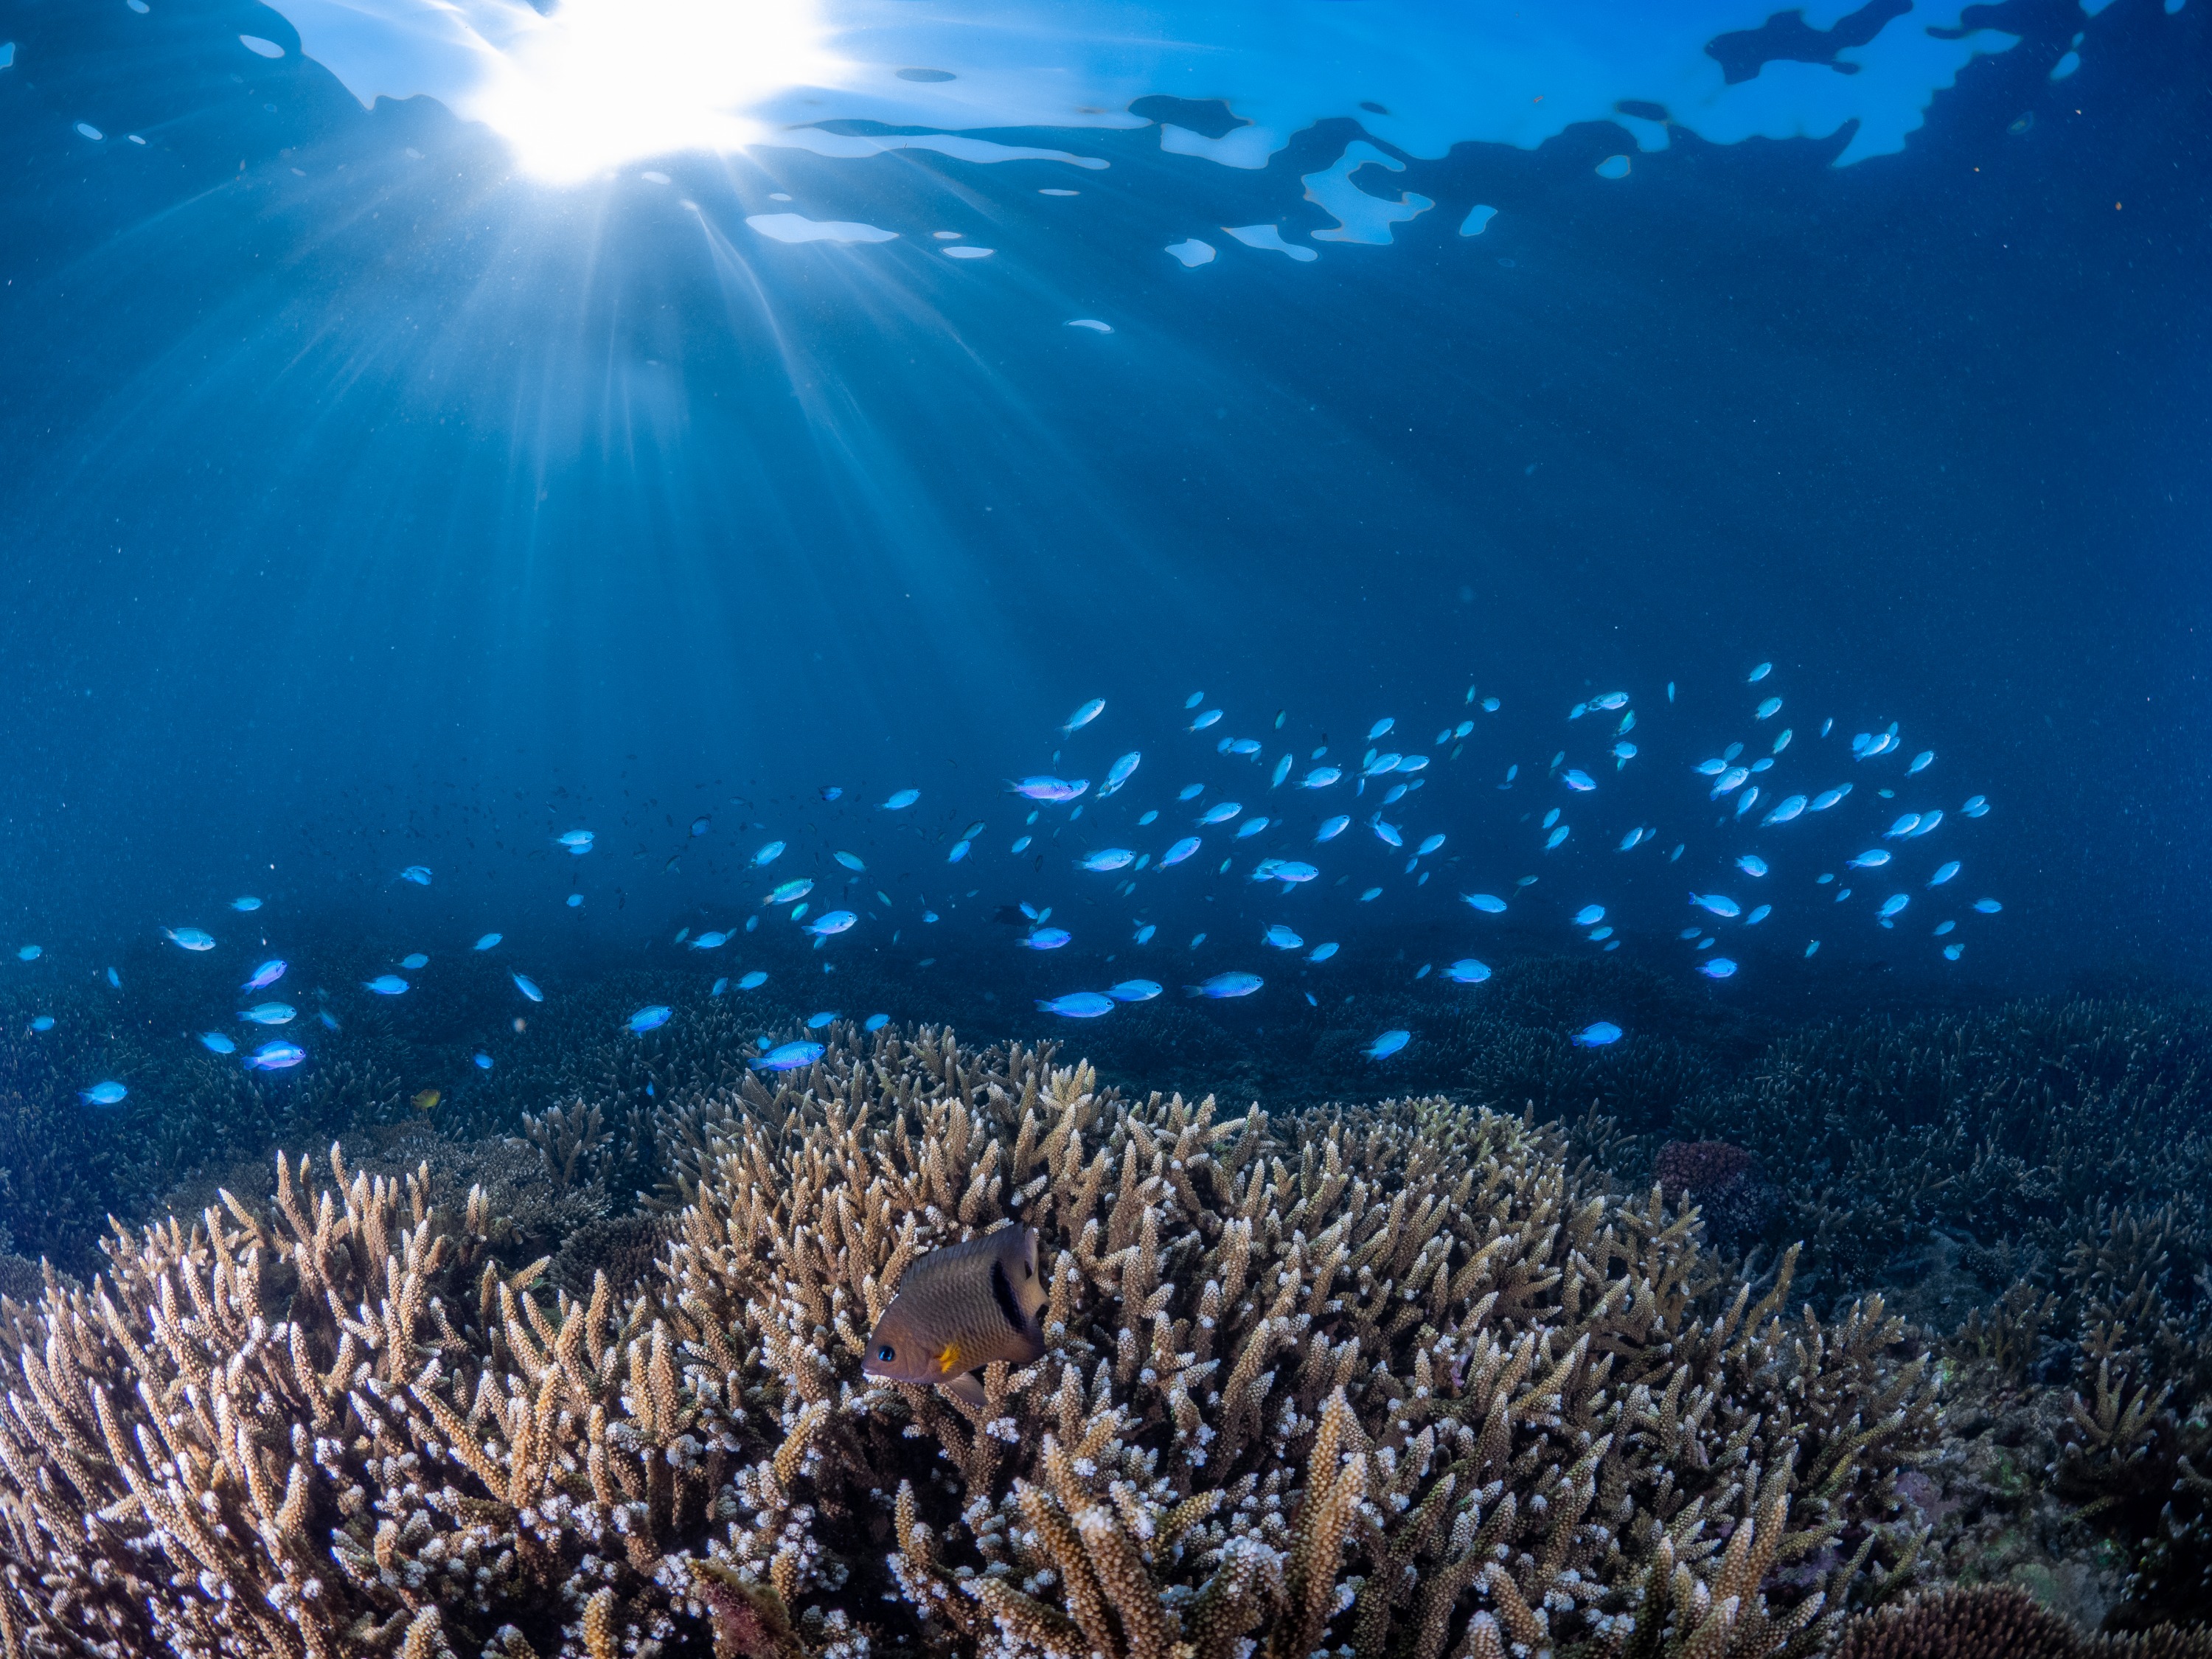 澎湖潛水: 樂福海洋工坊珊瑚海洋花園 - 體驗潛水